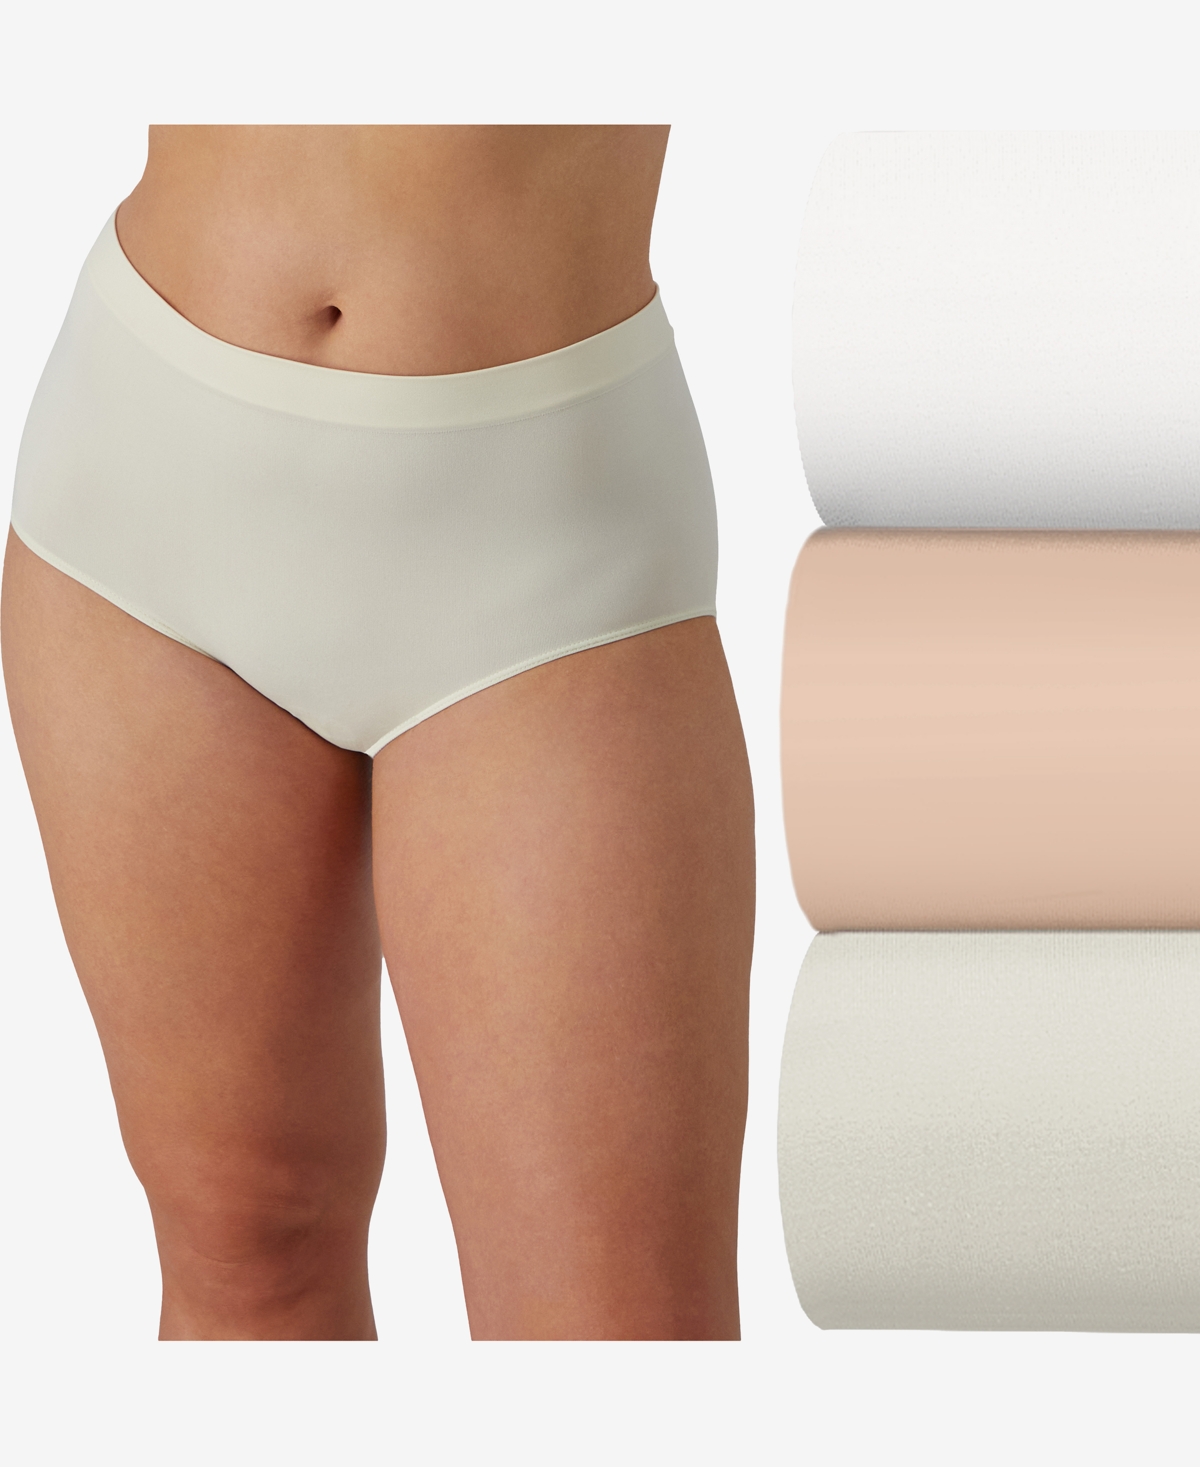 Women's 3-Pk. Comfort Revolution Microfiber Damask Brief Underwear AK88 - Navy/Pink/Taupe